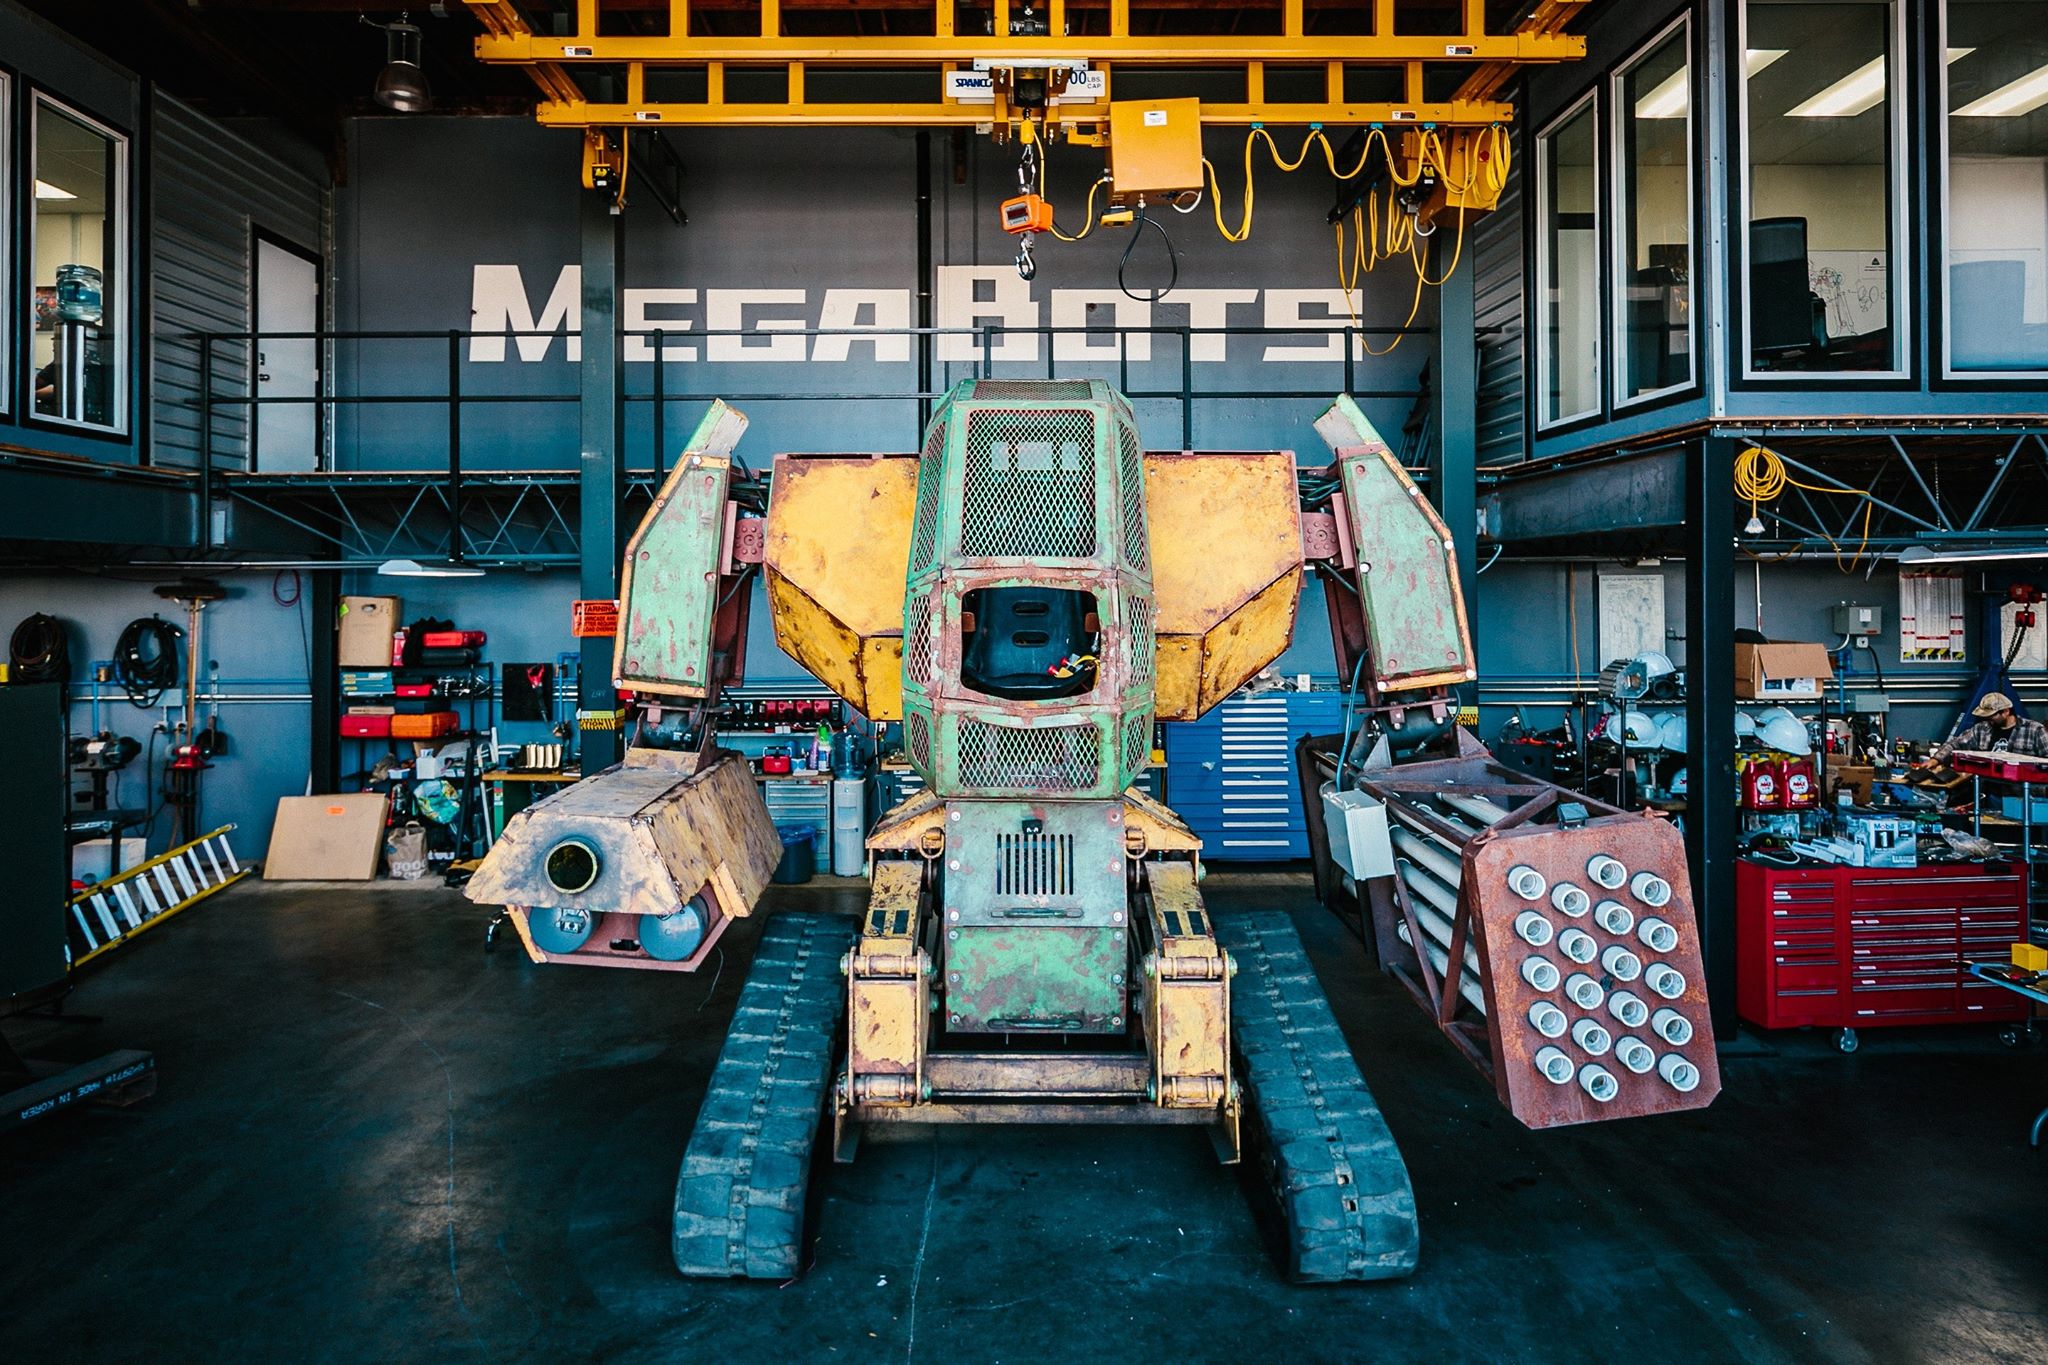 時速1マイルバズーカ 3 000ポンドの握力 Sf世界を体験 巨大ロボット Megabots 日本上陸 一般社団法人 Chimera Unionのプレスリリース